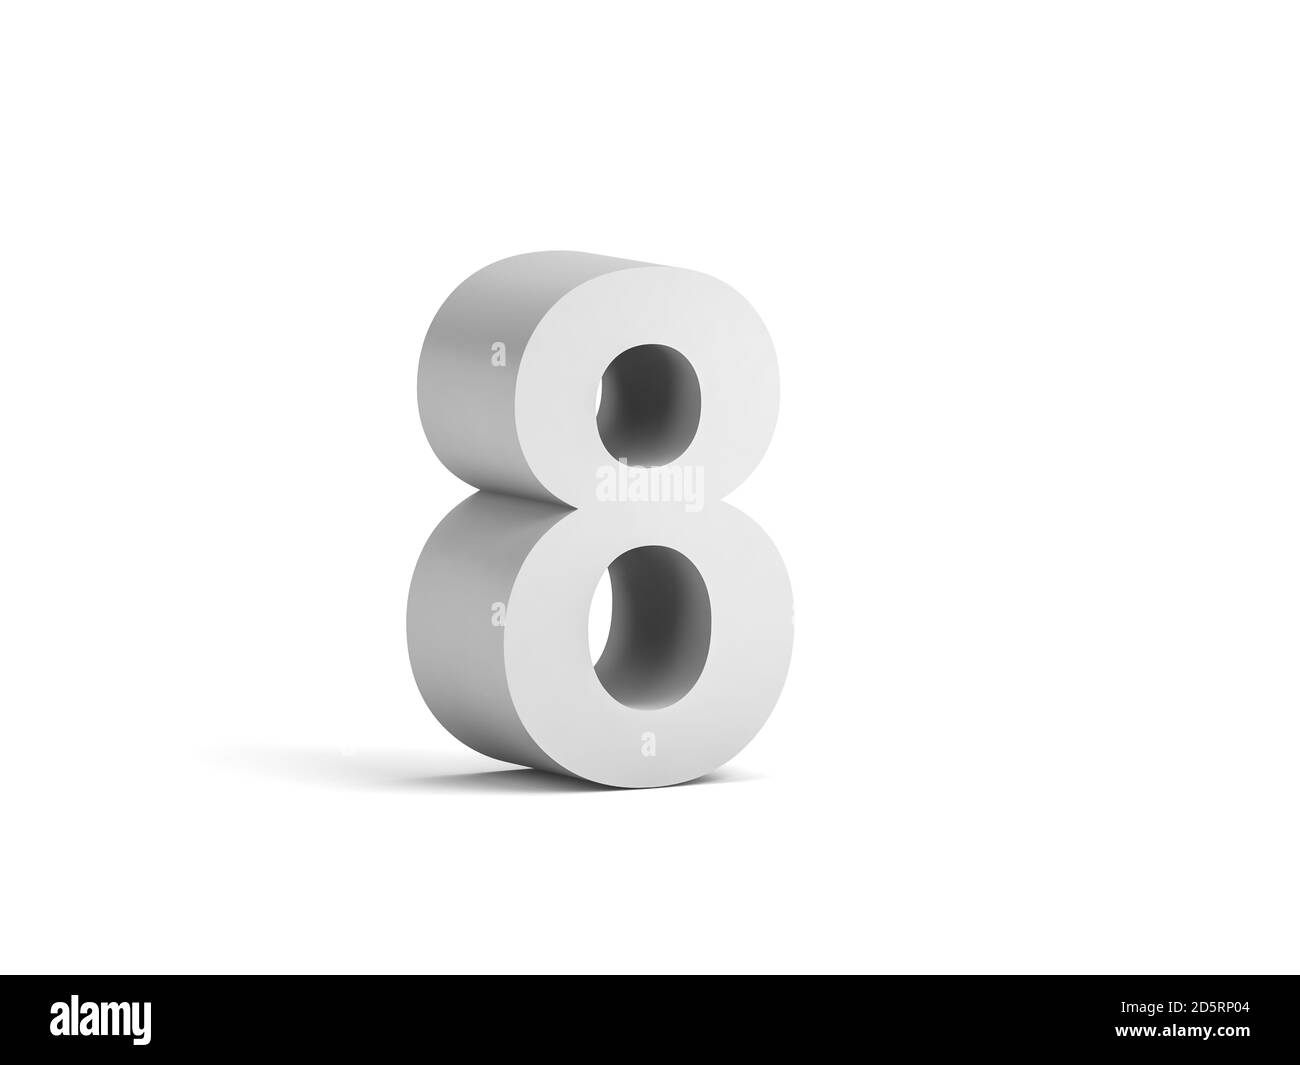 Cifra bianca in grassetto 8 isolata su sfondo bianco con ombreggiatura morbida, rappresentazione 3d Foto Stock